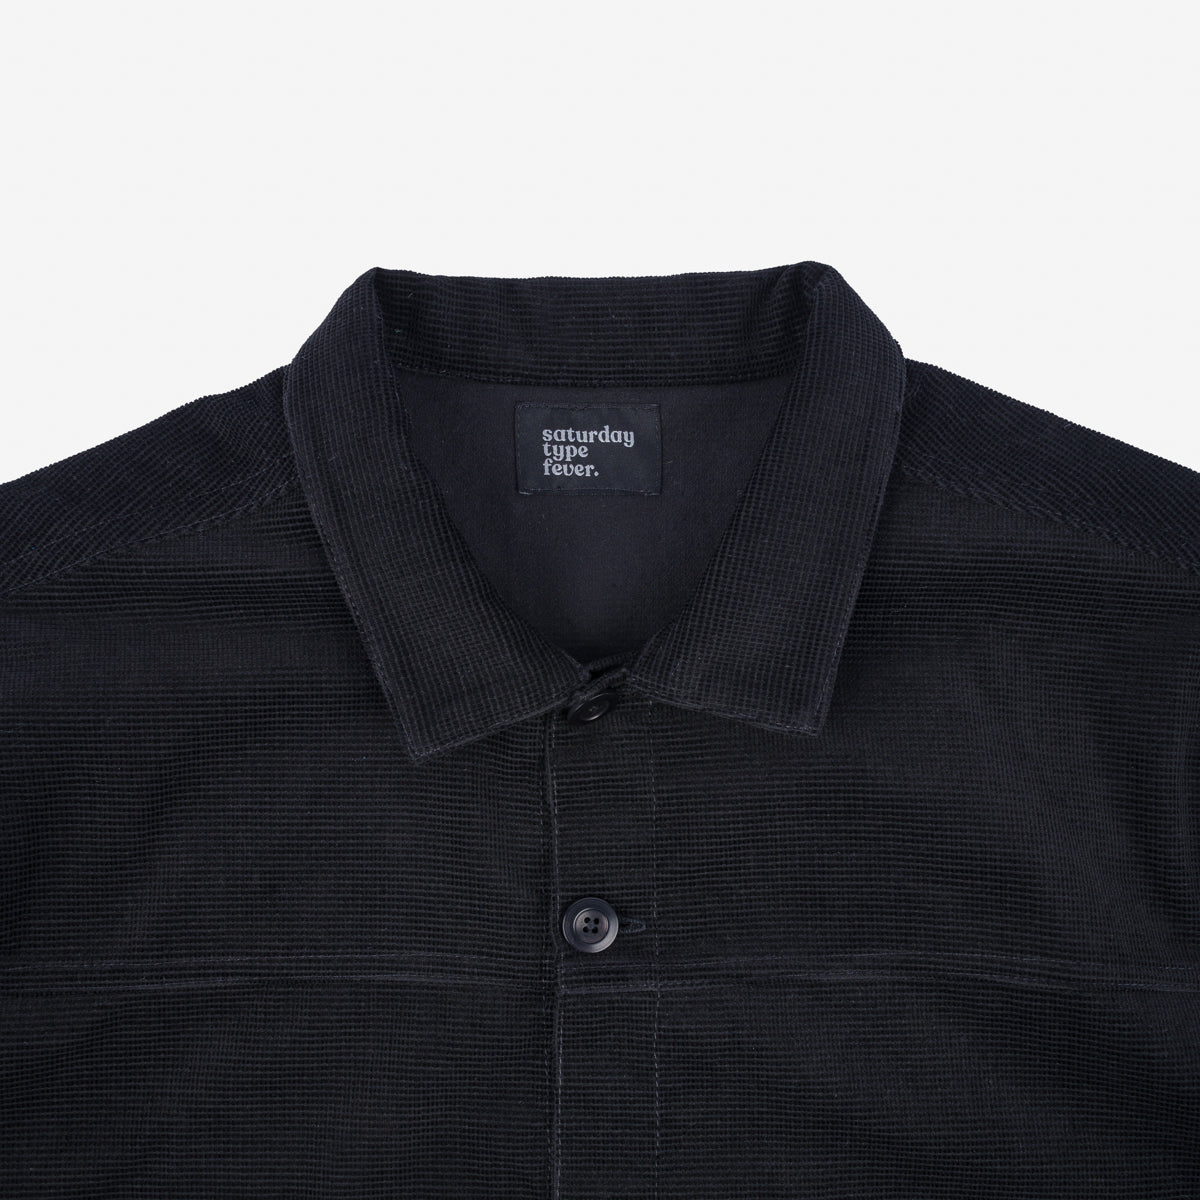 SaturdayTypeFever - Japanese Corduroy Shirt - Black